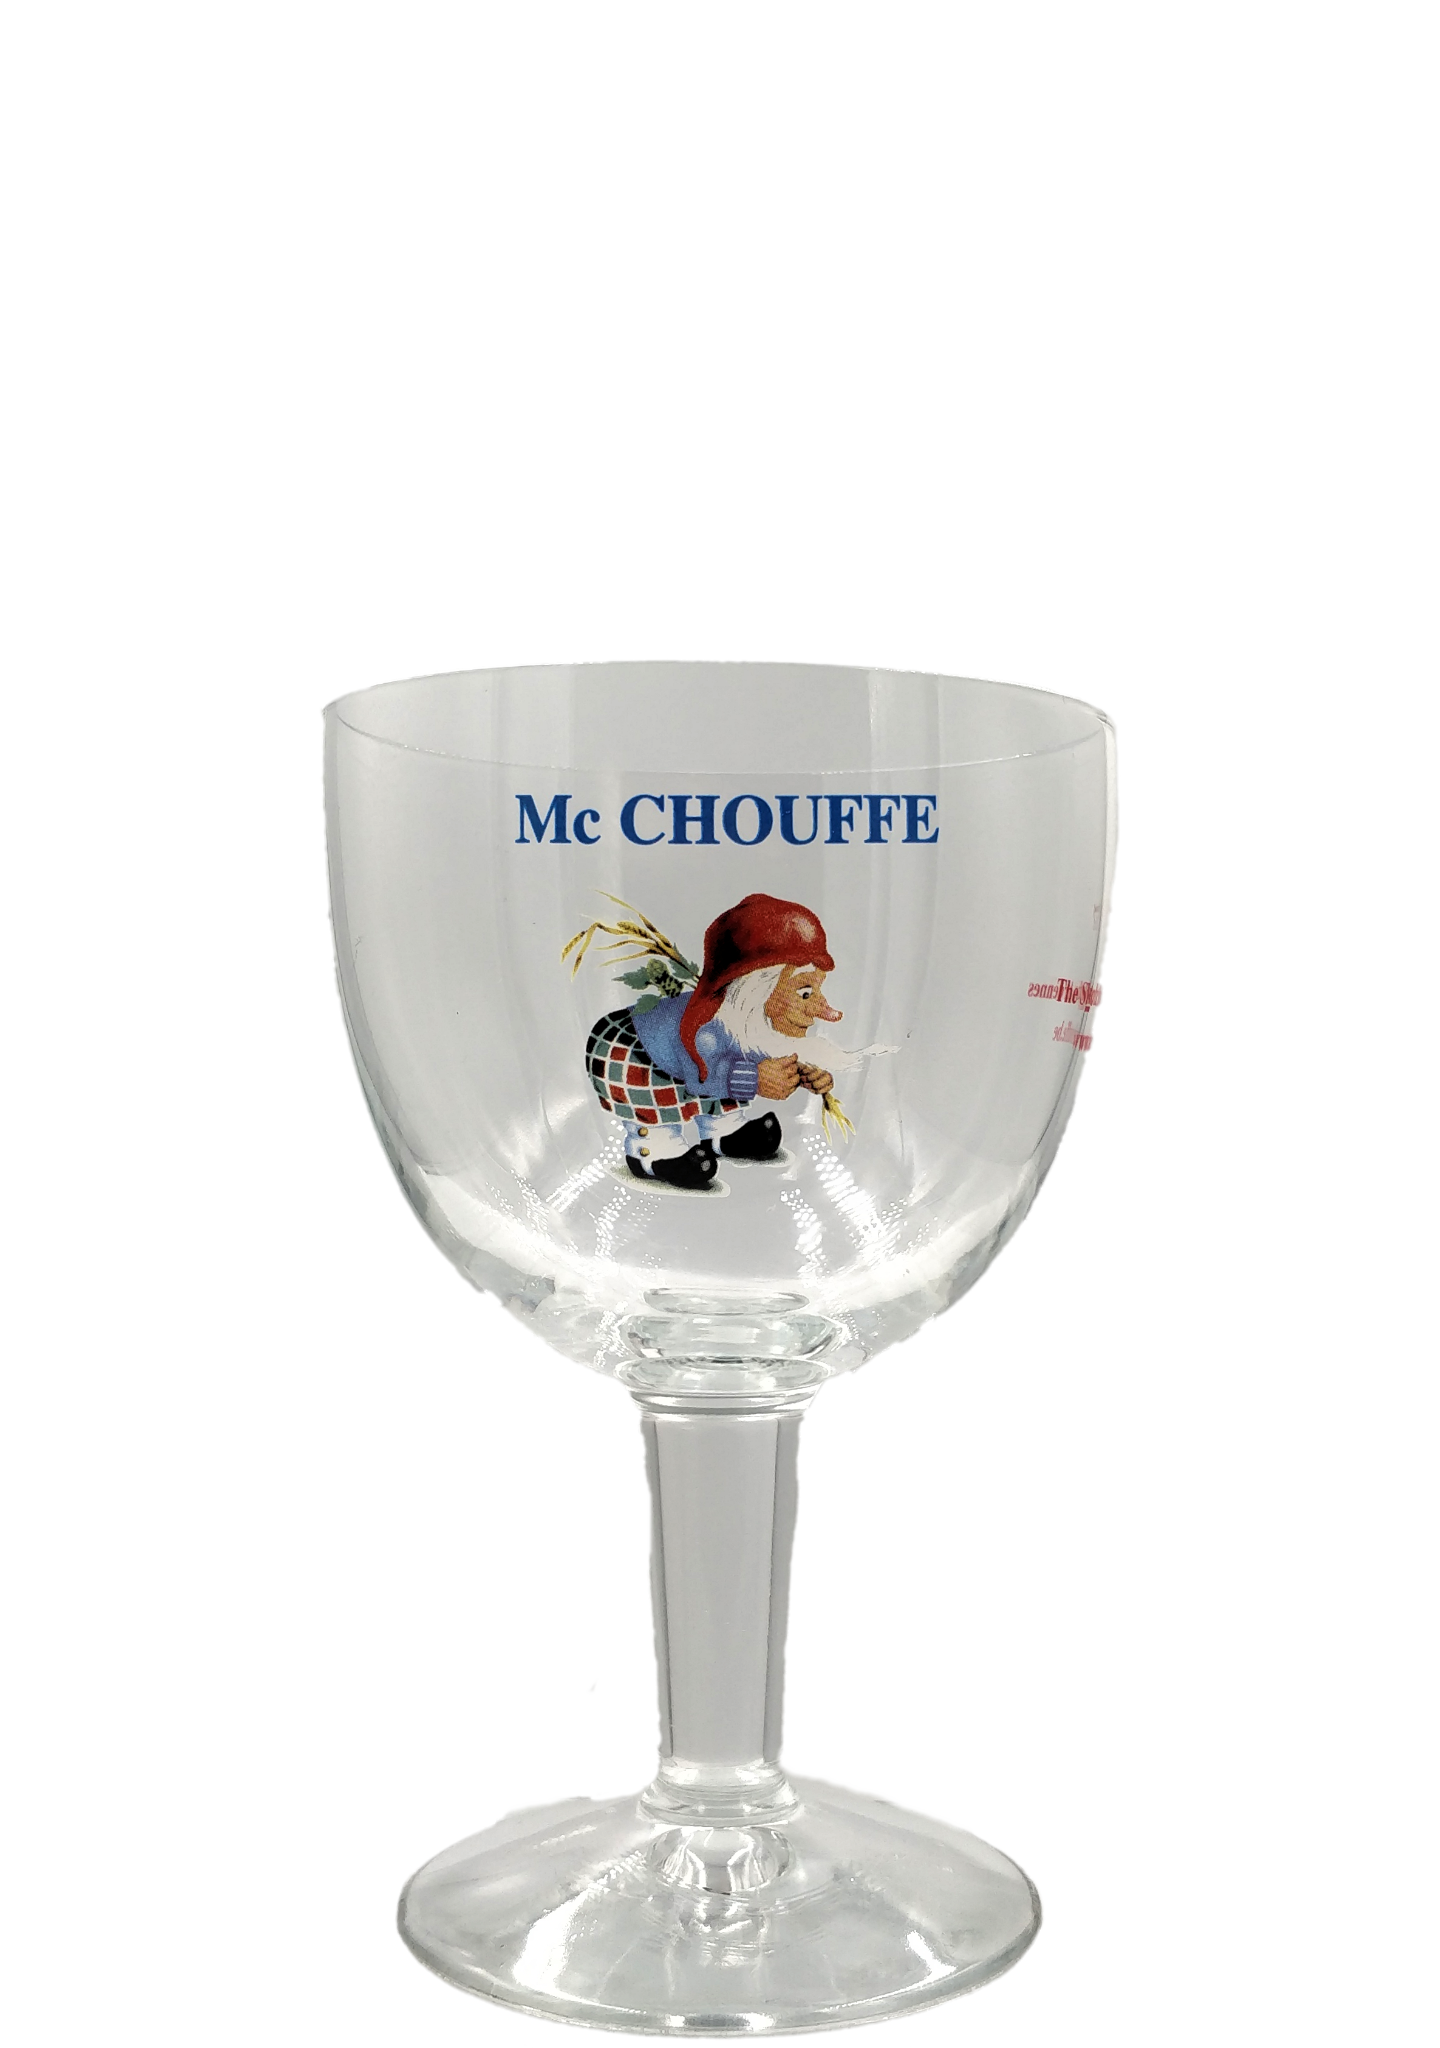 Mc Chouffe 25cl pokalglas